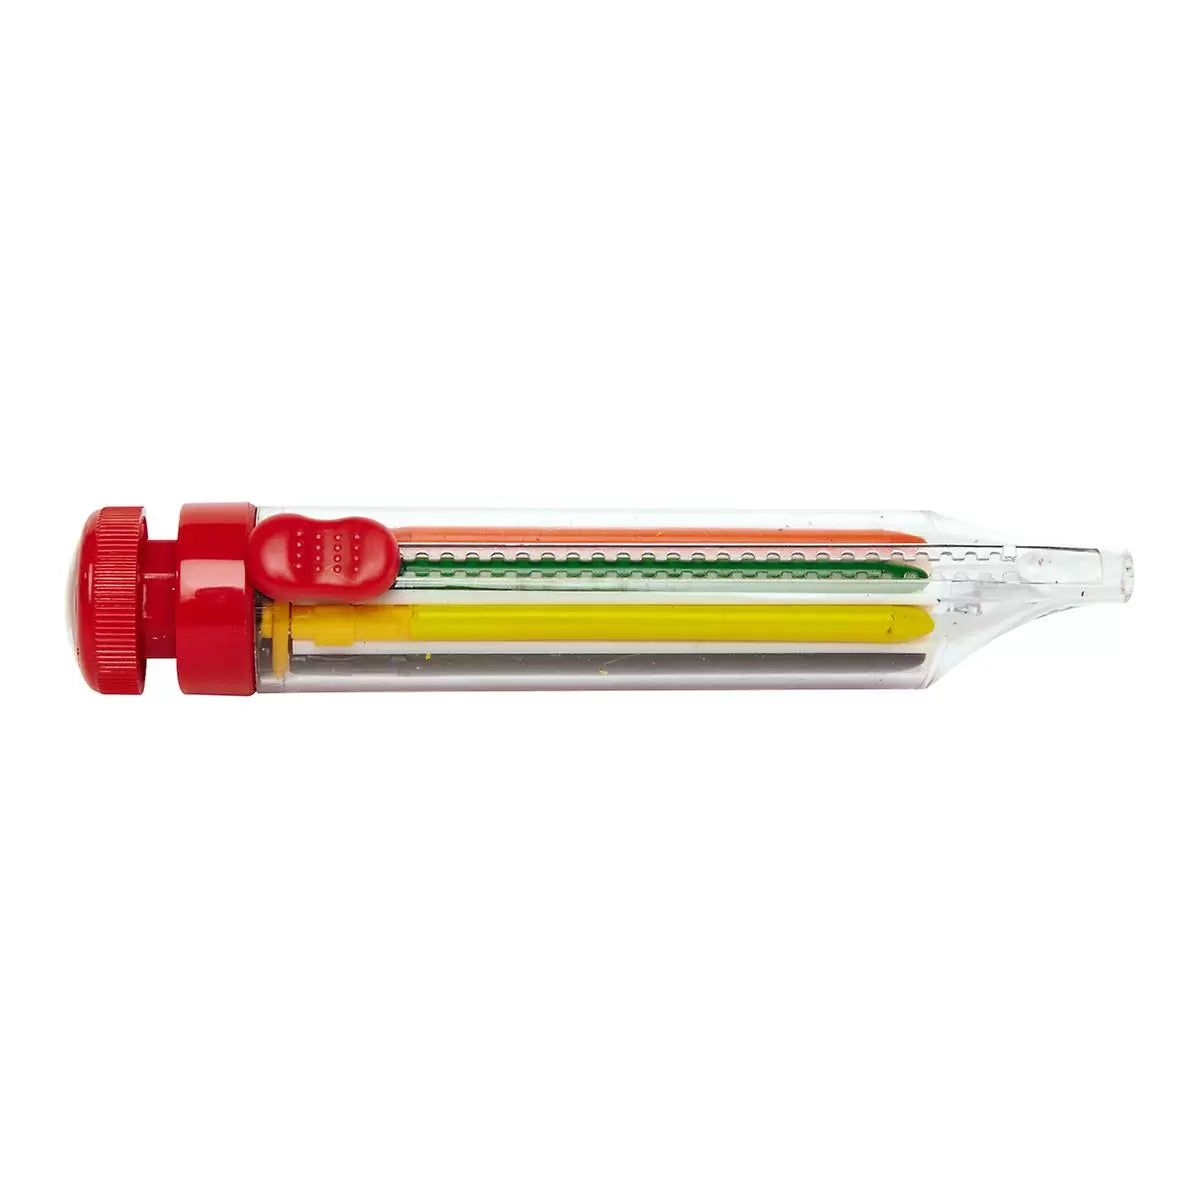 8-Color Crayon Pen